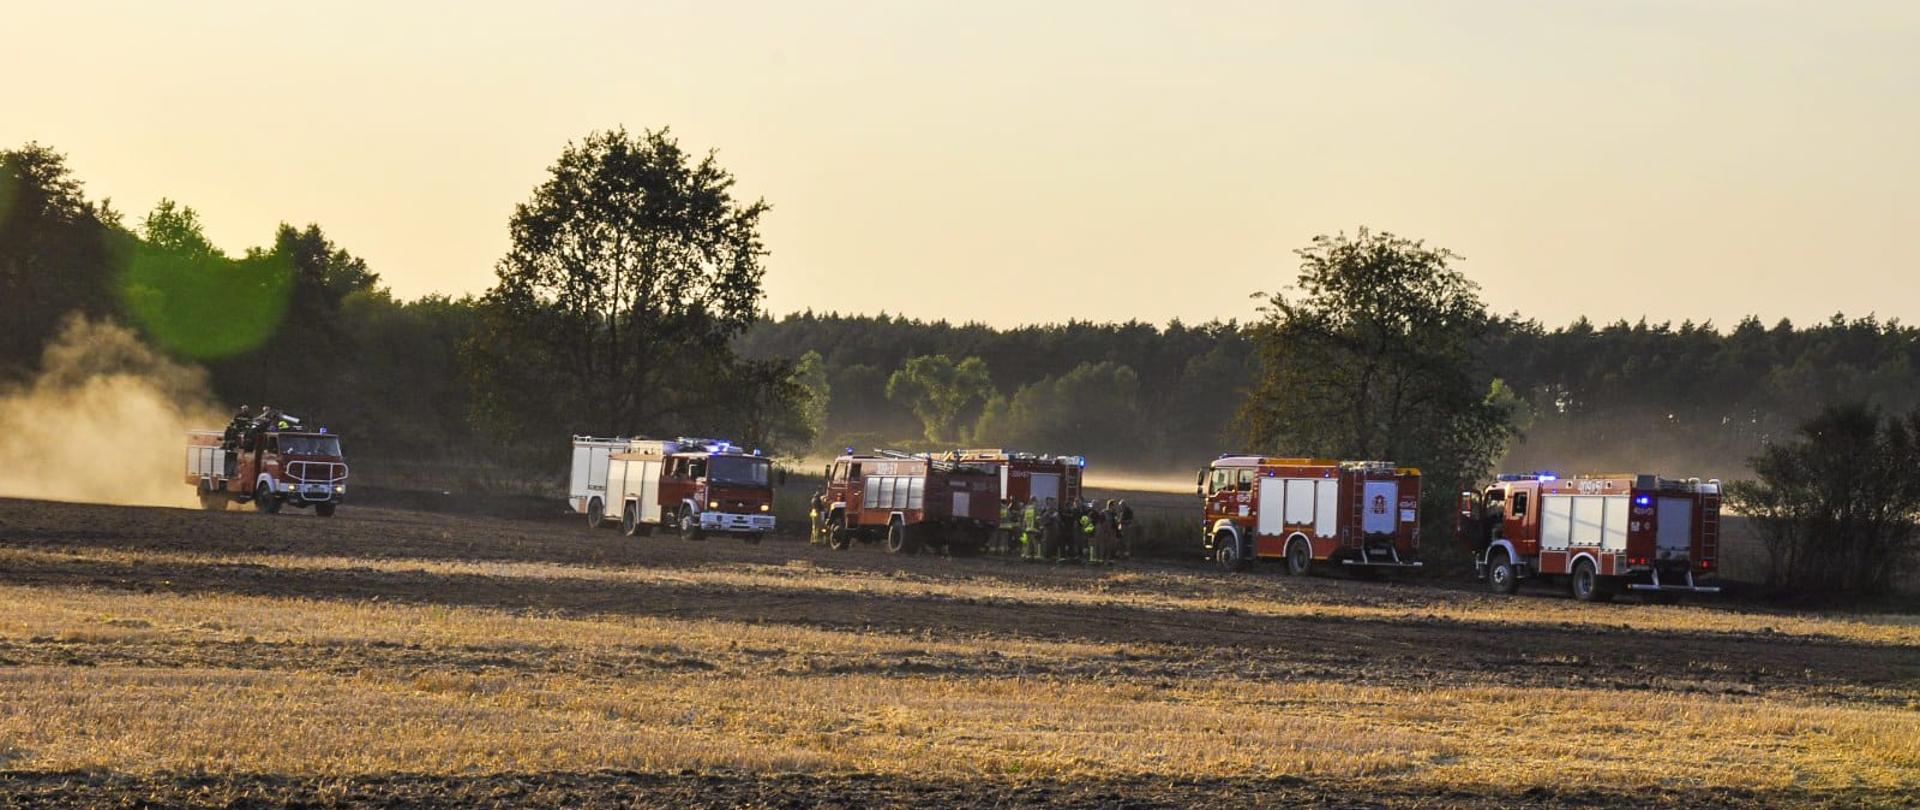 Pożar ścierniska na polu w pobliżu miejscowości Borkowice - zdjęcie przedstawia ściernisko po zakończonych działaniach gaśniczych, w tle ustawione są samochody gaśnicze 